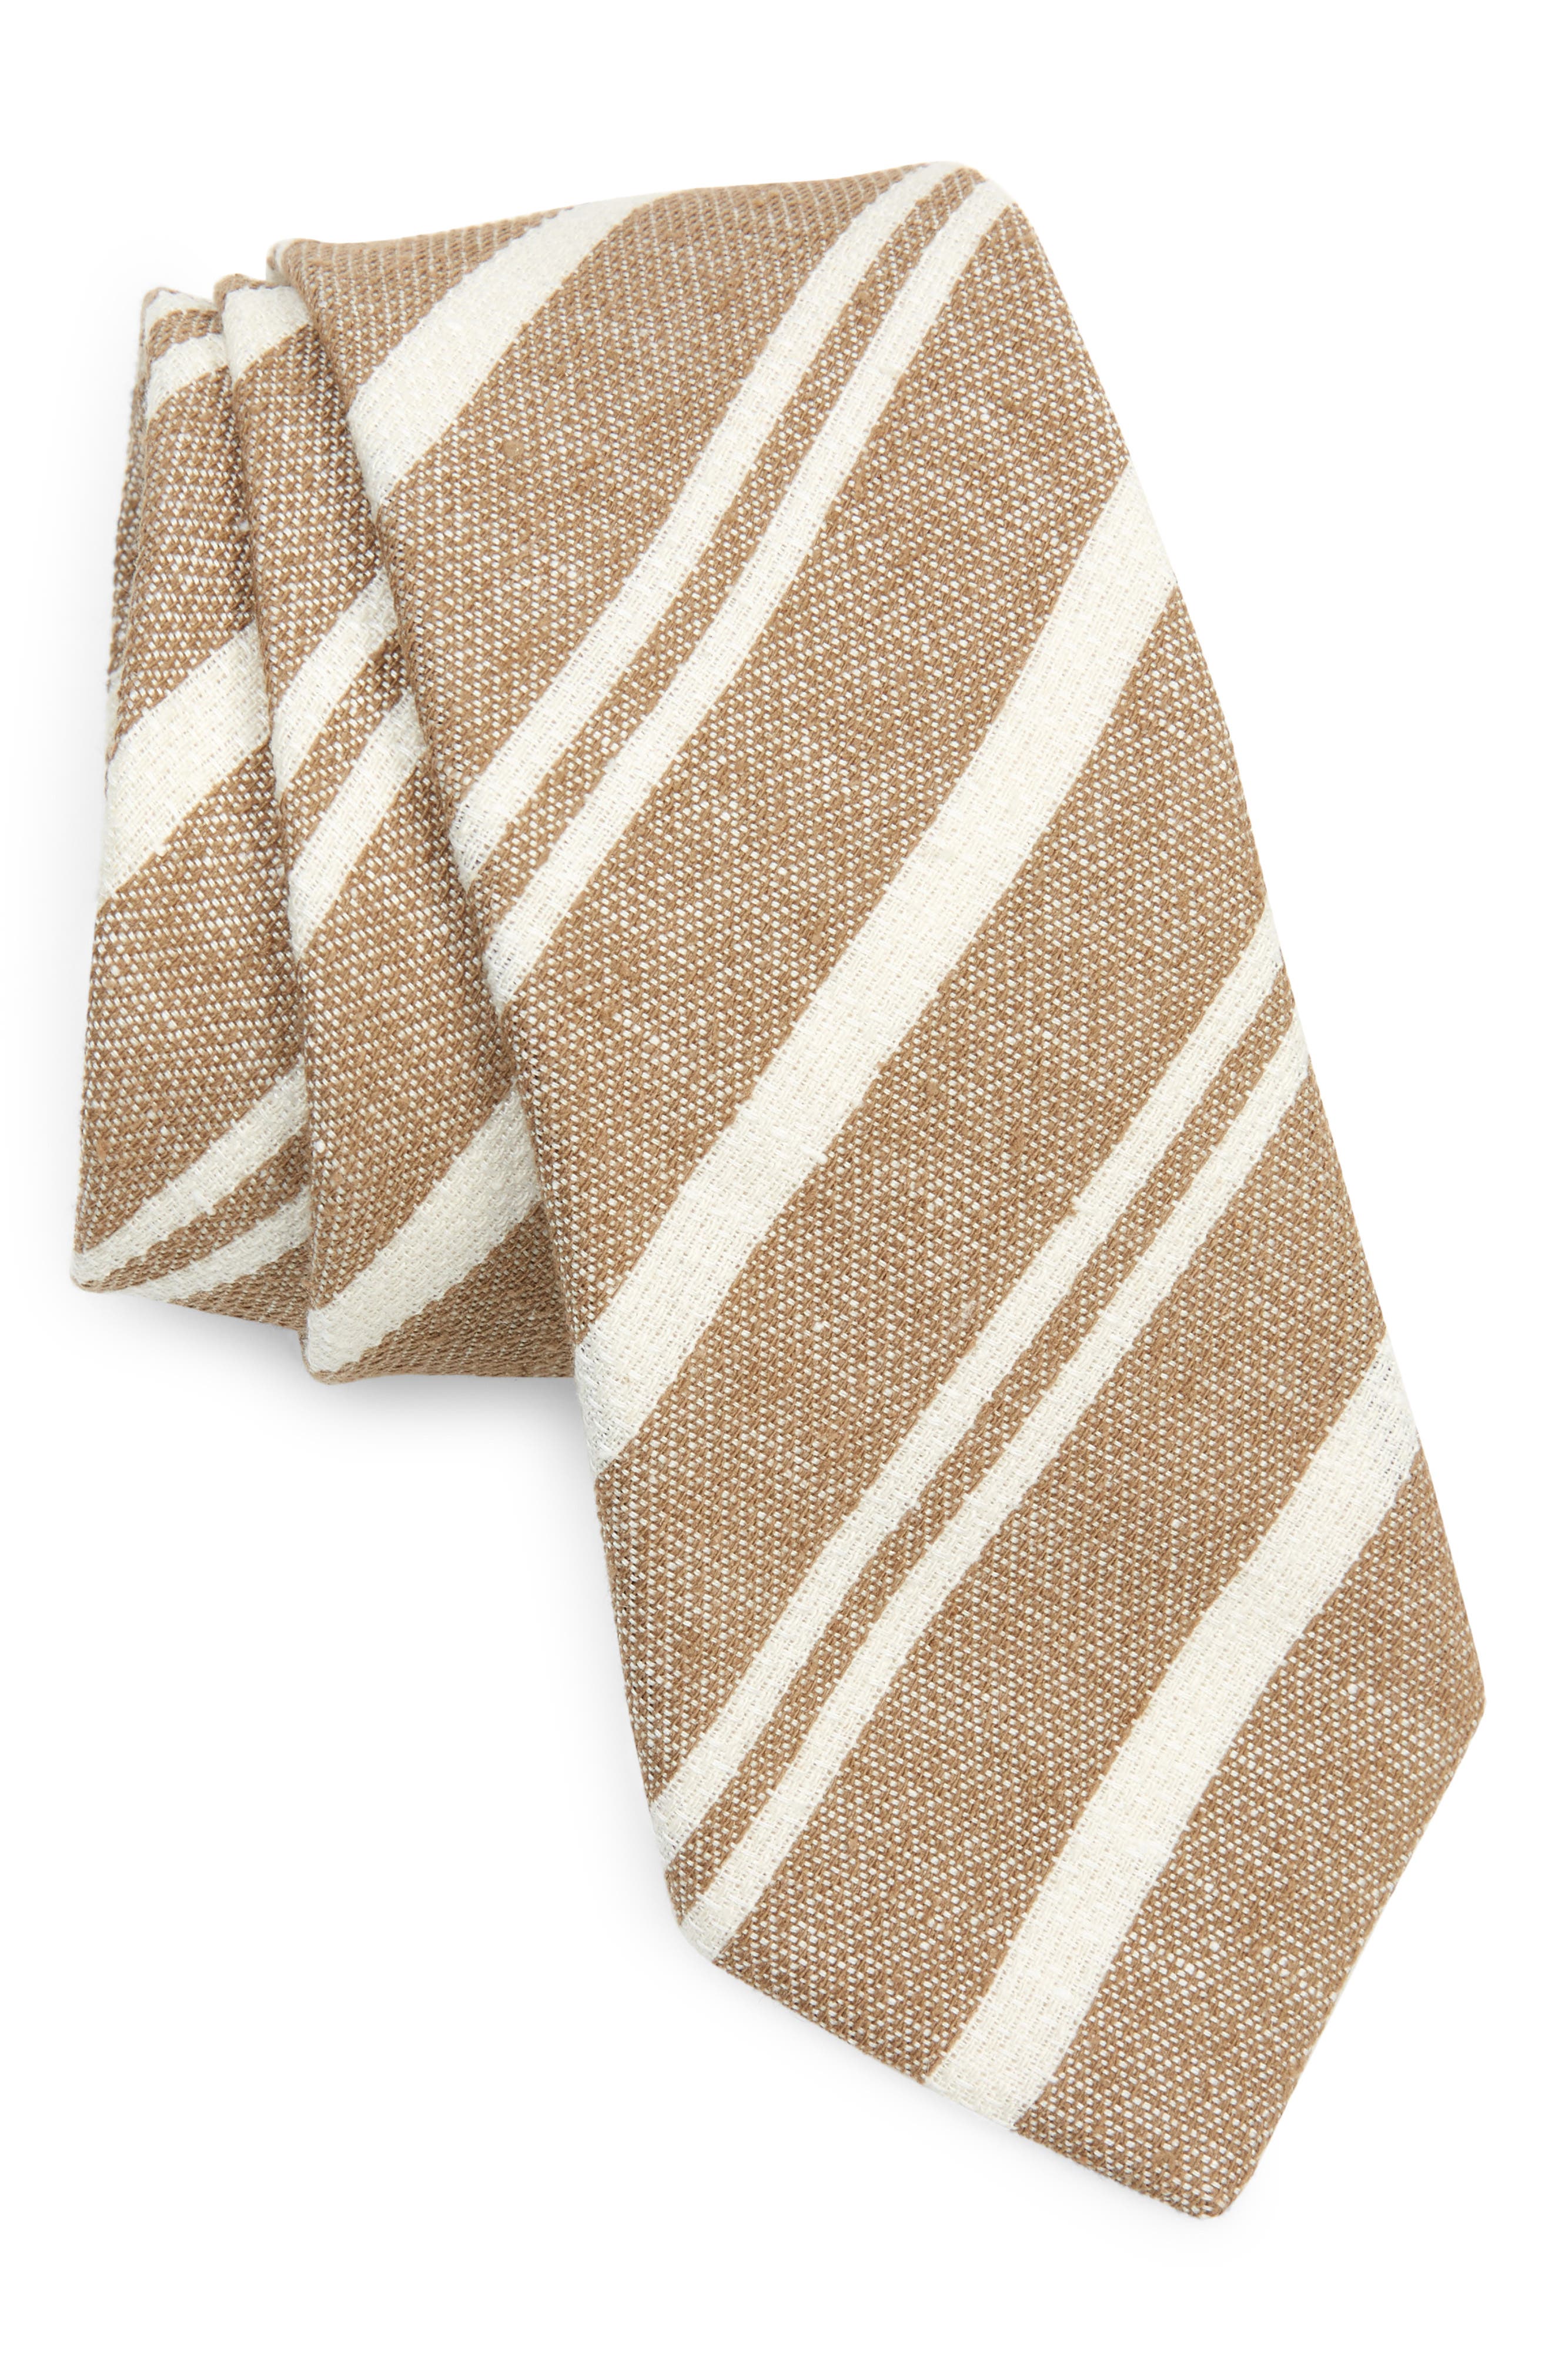 Brunello Cucinelli Stripe Silk & Linen Tie in Camel Chiaro/Panama at Nordstrom